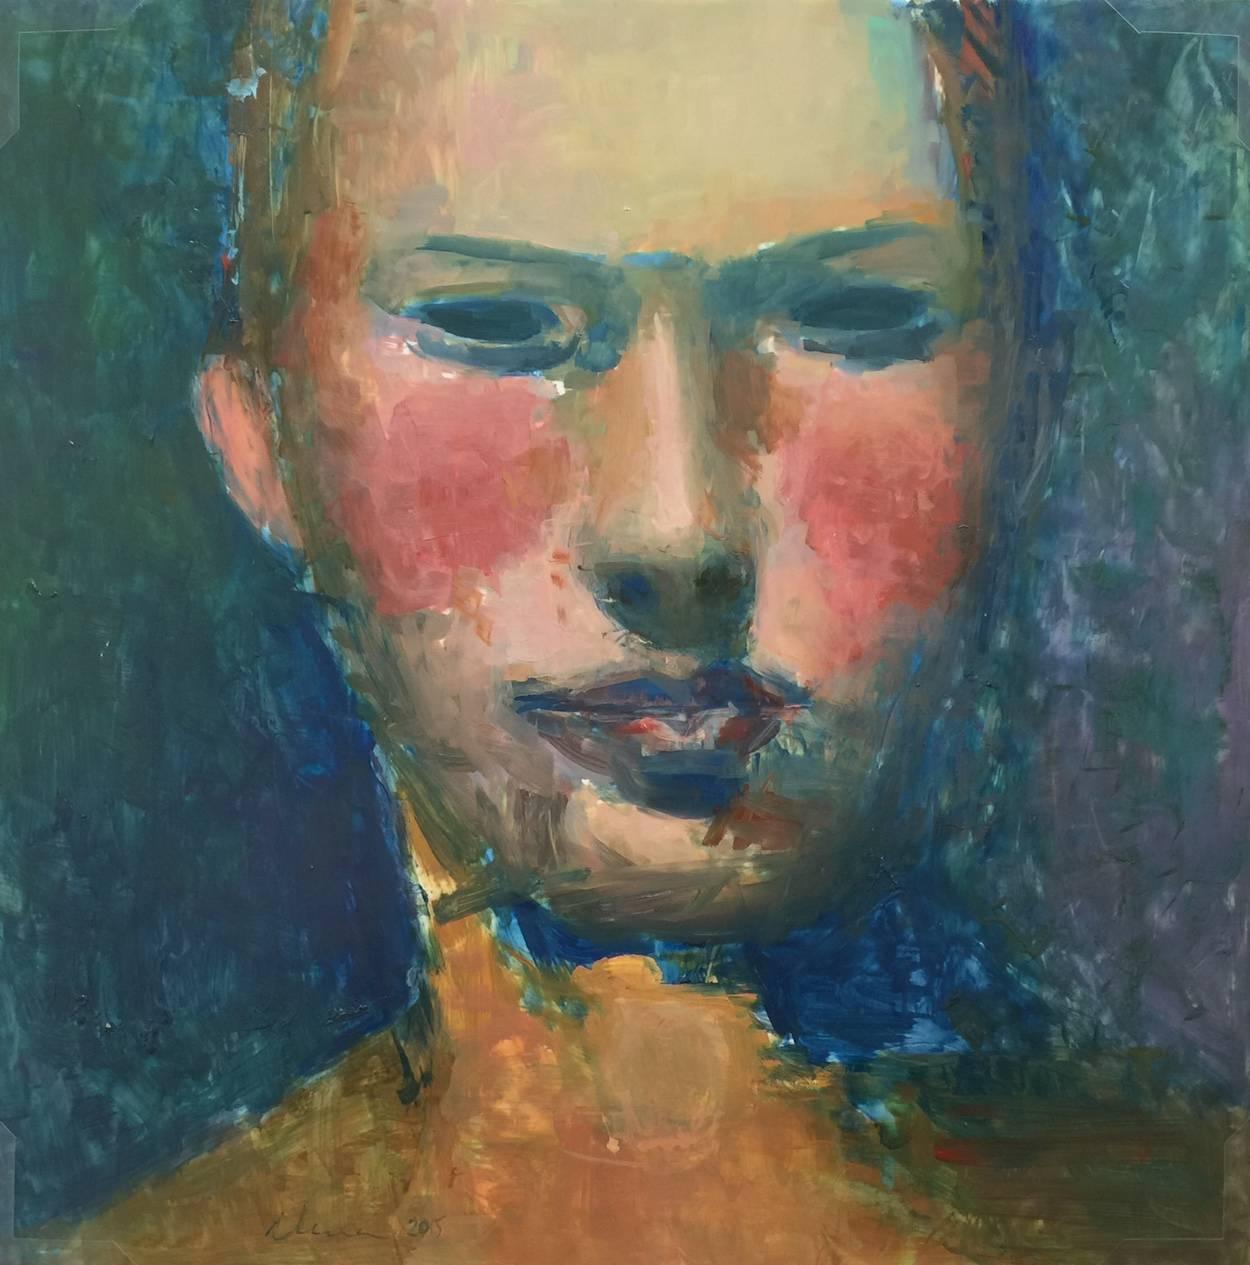 Elena Zolotnitsky Portrait Painting - Head / Woman's head mixed media oil painting 